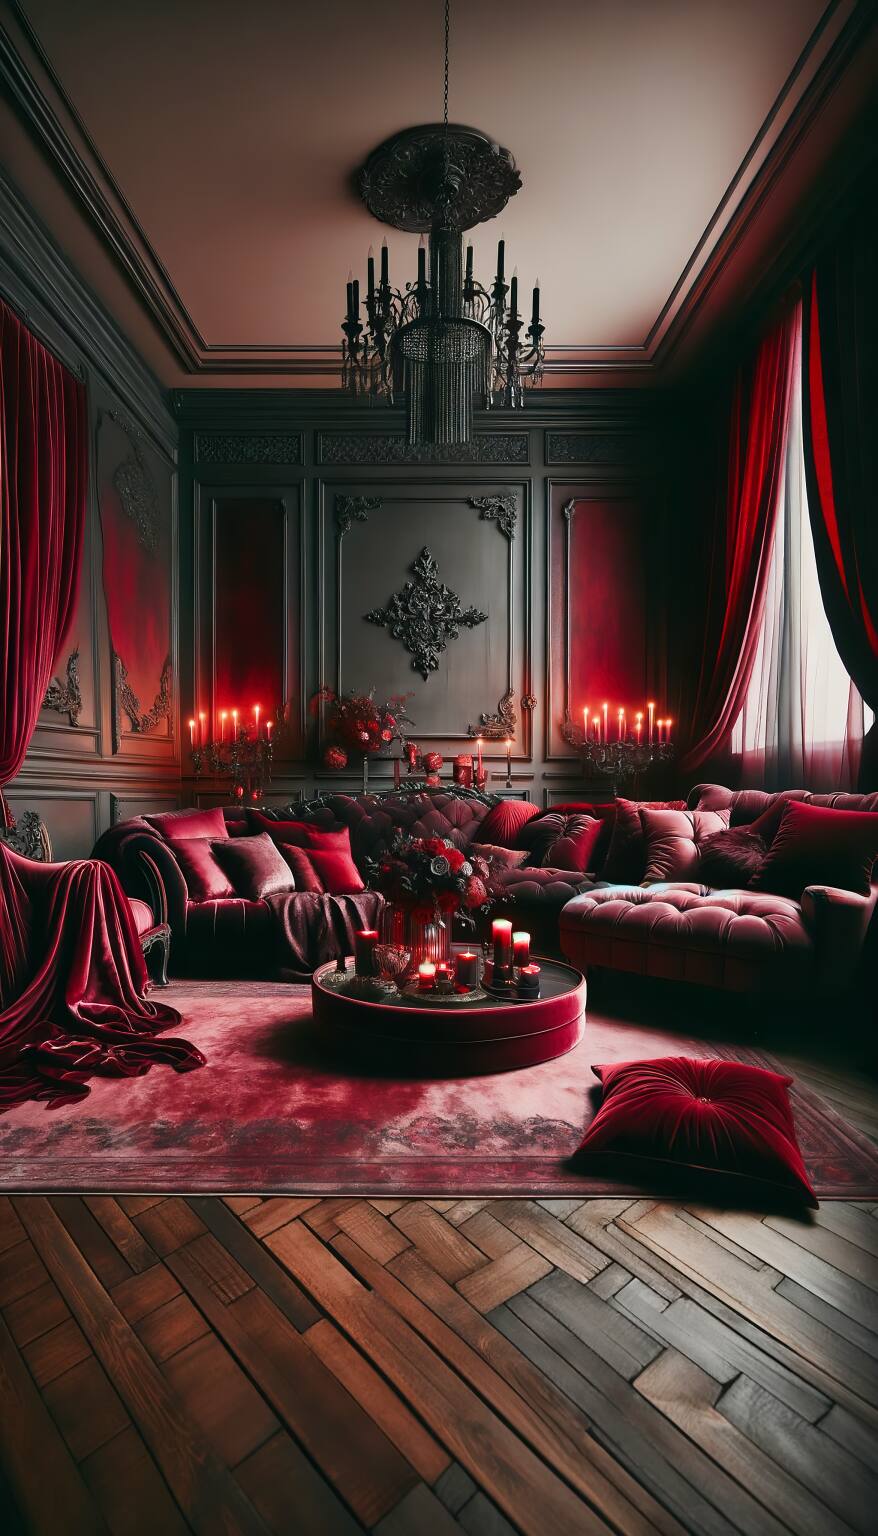 Ein Romantisches Wohnzimmer In Karminroten Und Anthrazitfarbenen Tönen Mit Einem Plüschsofa Und Samtsesseln In Einer Atmosphäre Von Luxuriöser Und Traumhafter Eleganz.